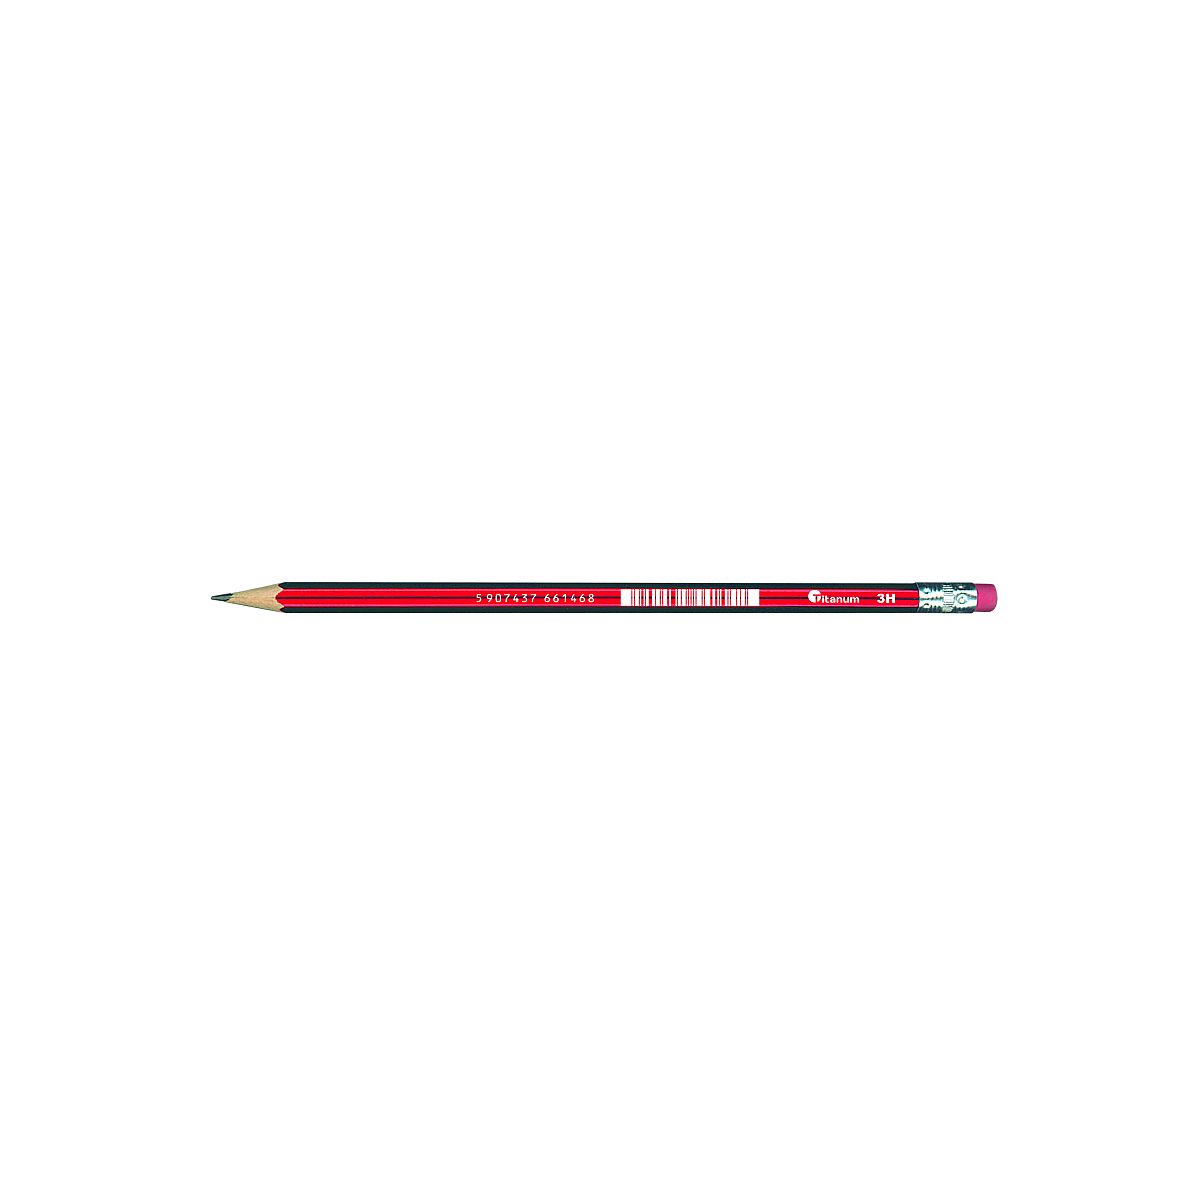 Ołówek techniczny Titanum 3H z gumką 12 szt.